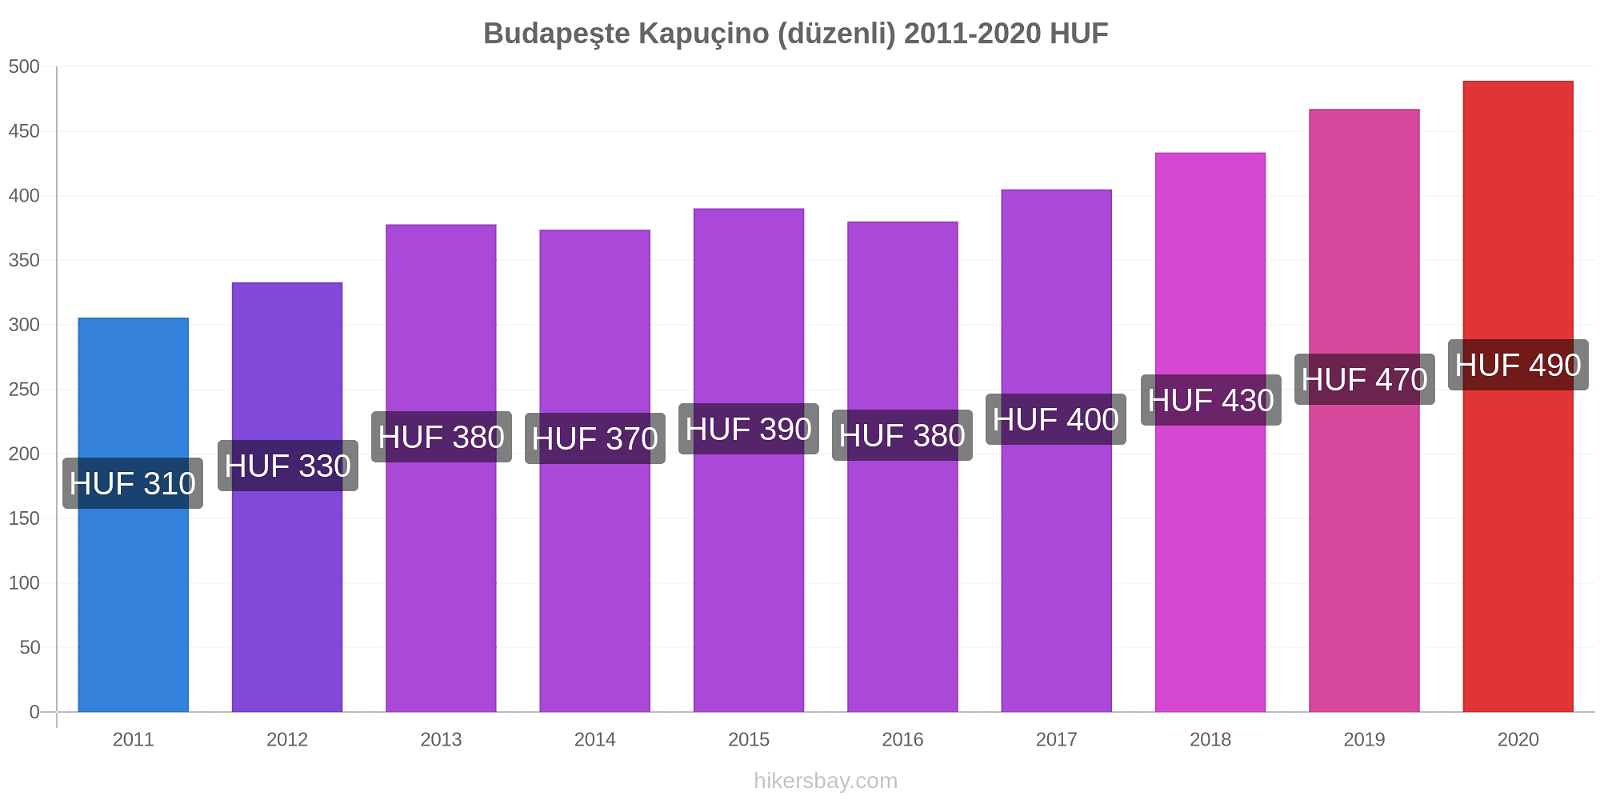 Budapeşte fiyat değişiklikleri Kapuçino (düzenli) hikersbay.com